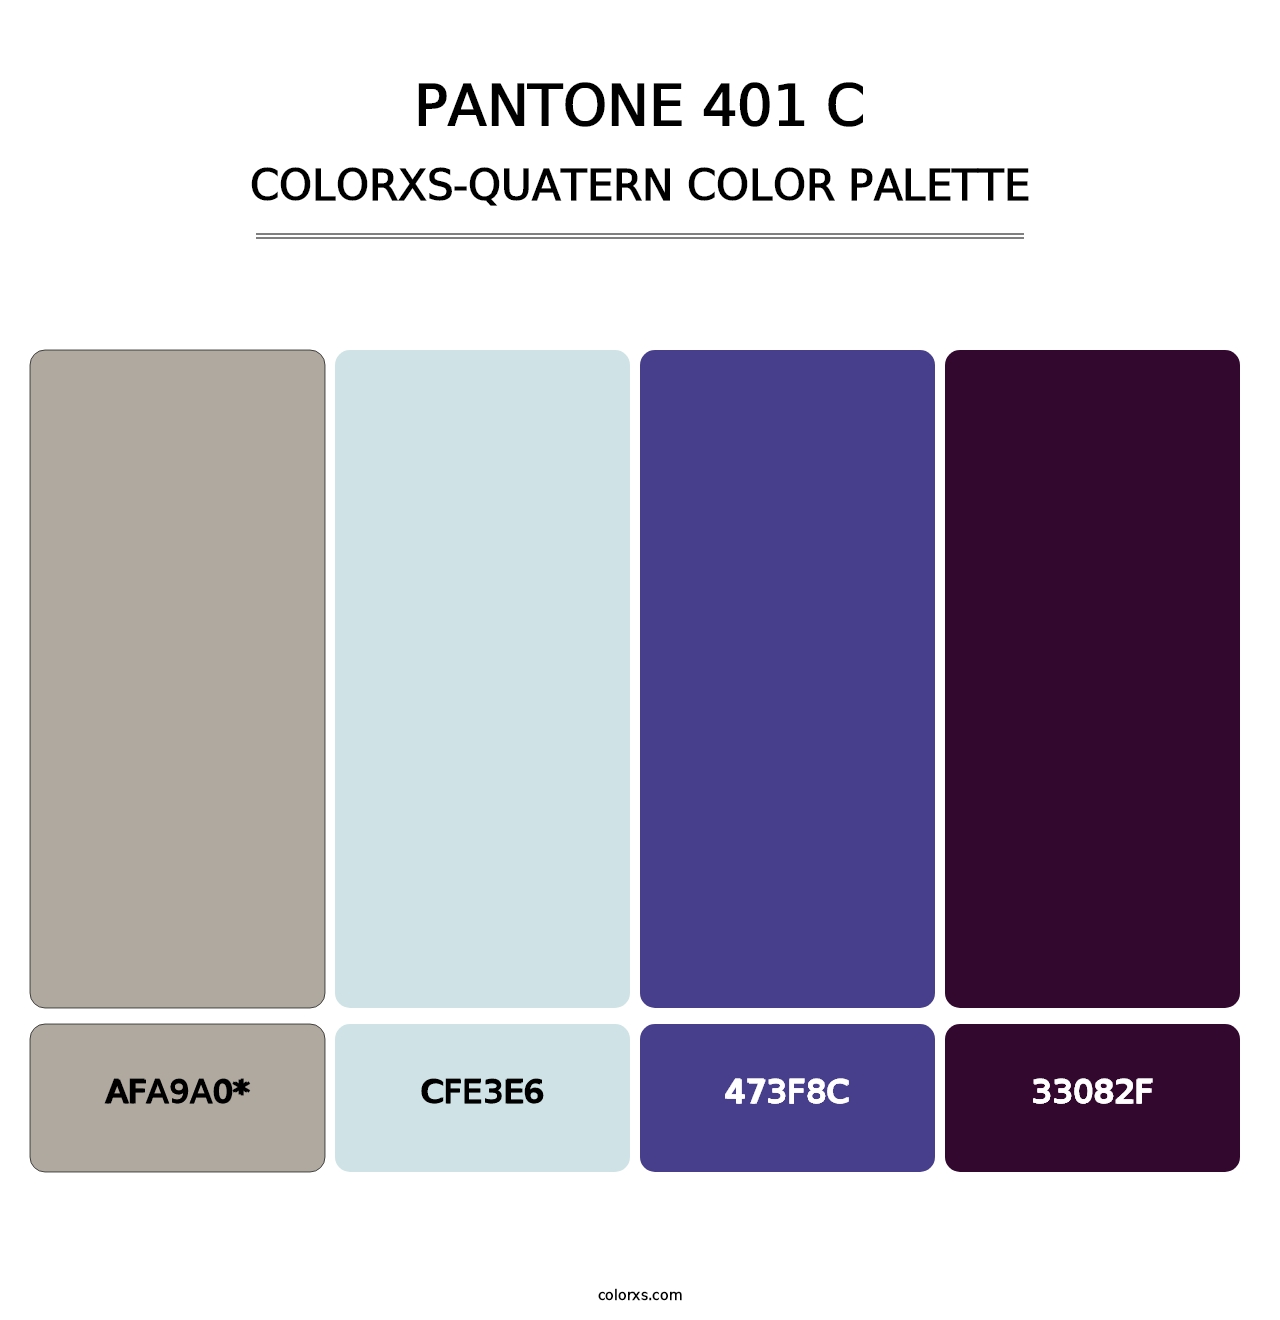 PANTONE 401 C - Colorxs Quatern Palette